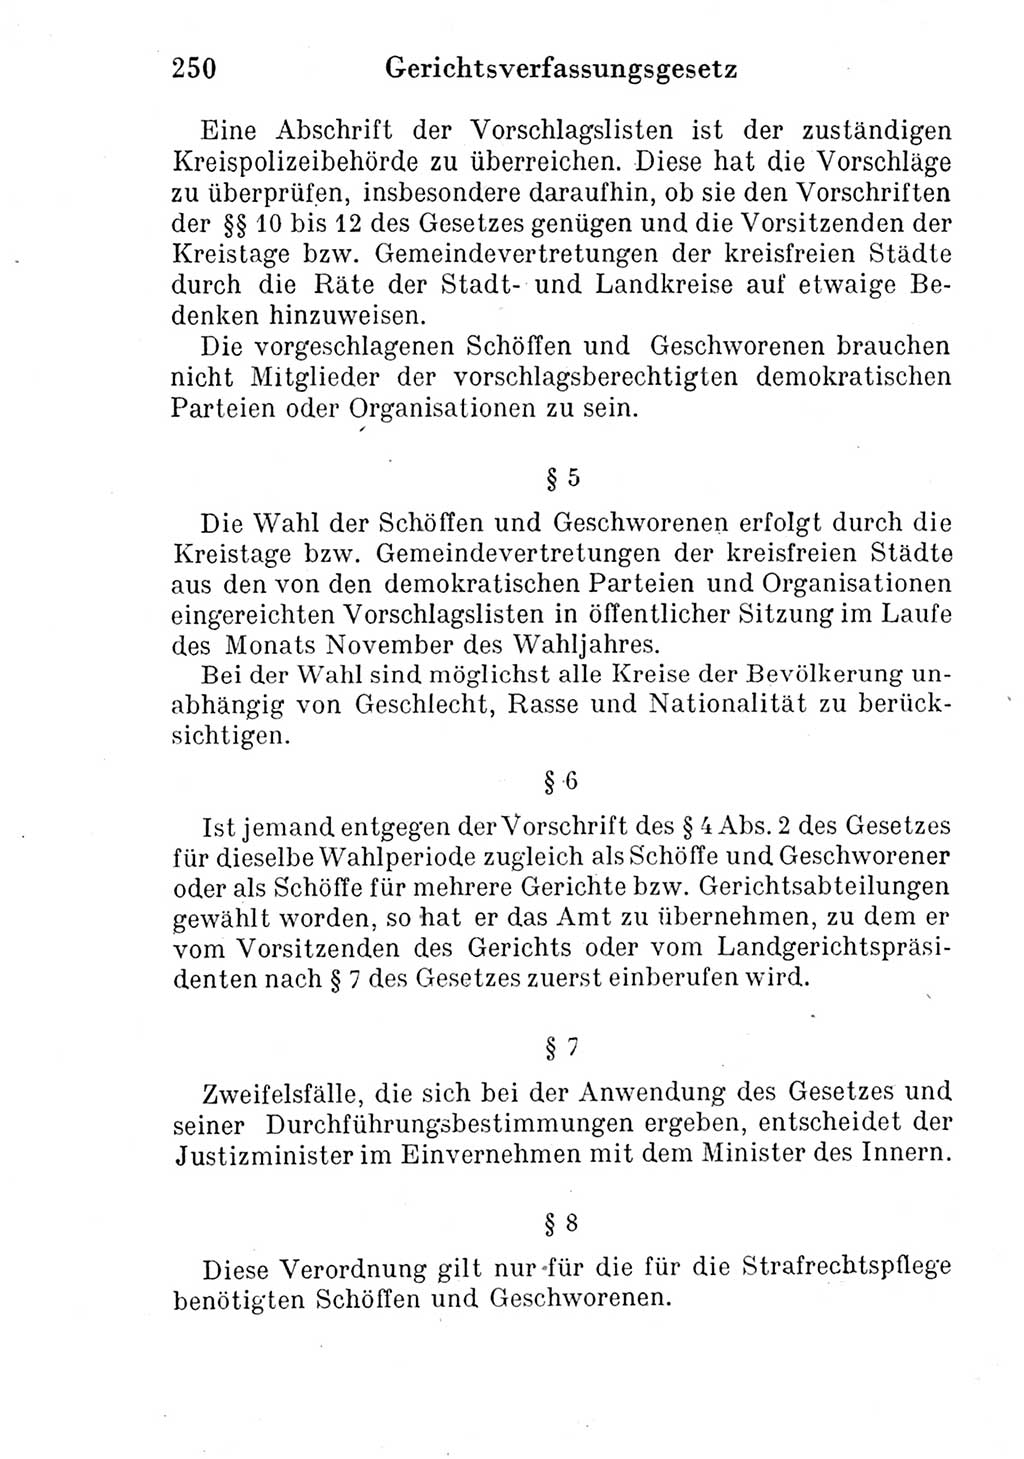 Strafprozeßordnung (StPO), Gerichtsverfassungsgesetz (GVG) und zahlreiche Nebengesetze der Deutschen Demokratischen Republik (DDR) 1950, Seite 250 (StPO GVG Ges. DDR 1950, S. 250)